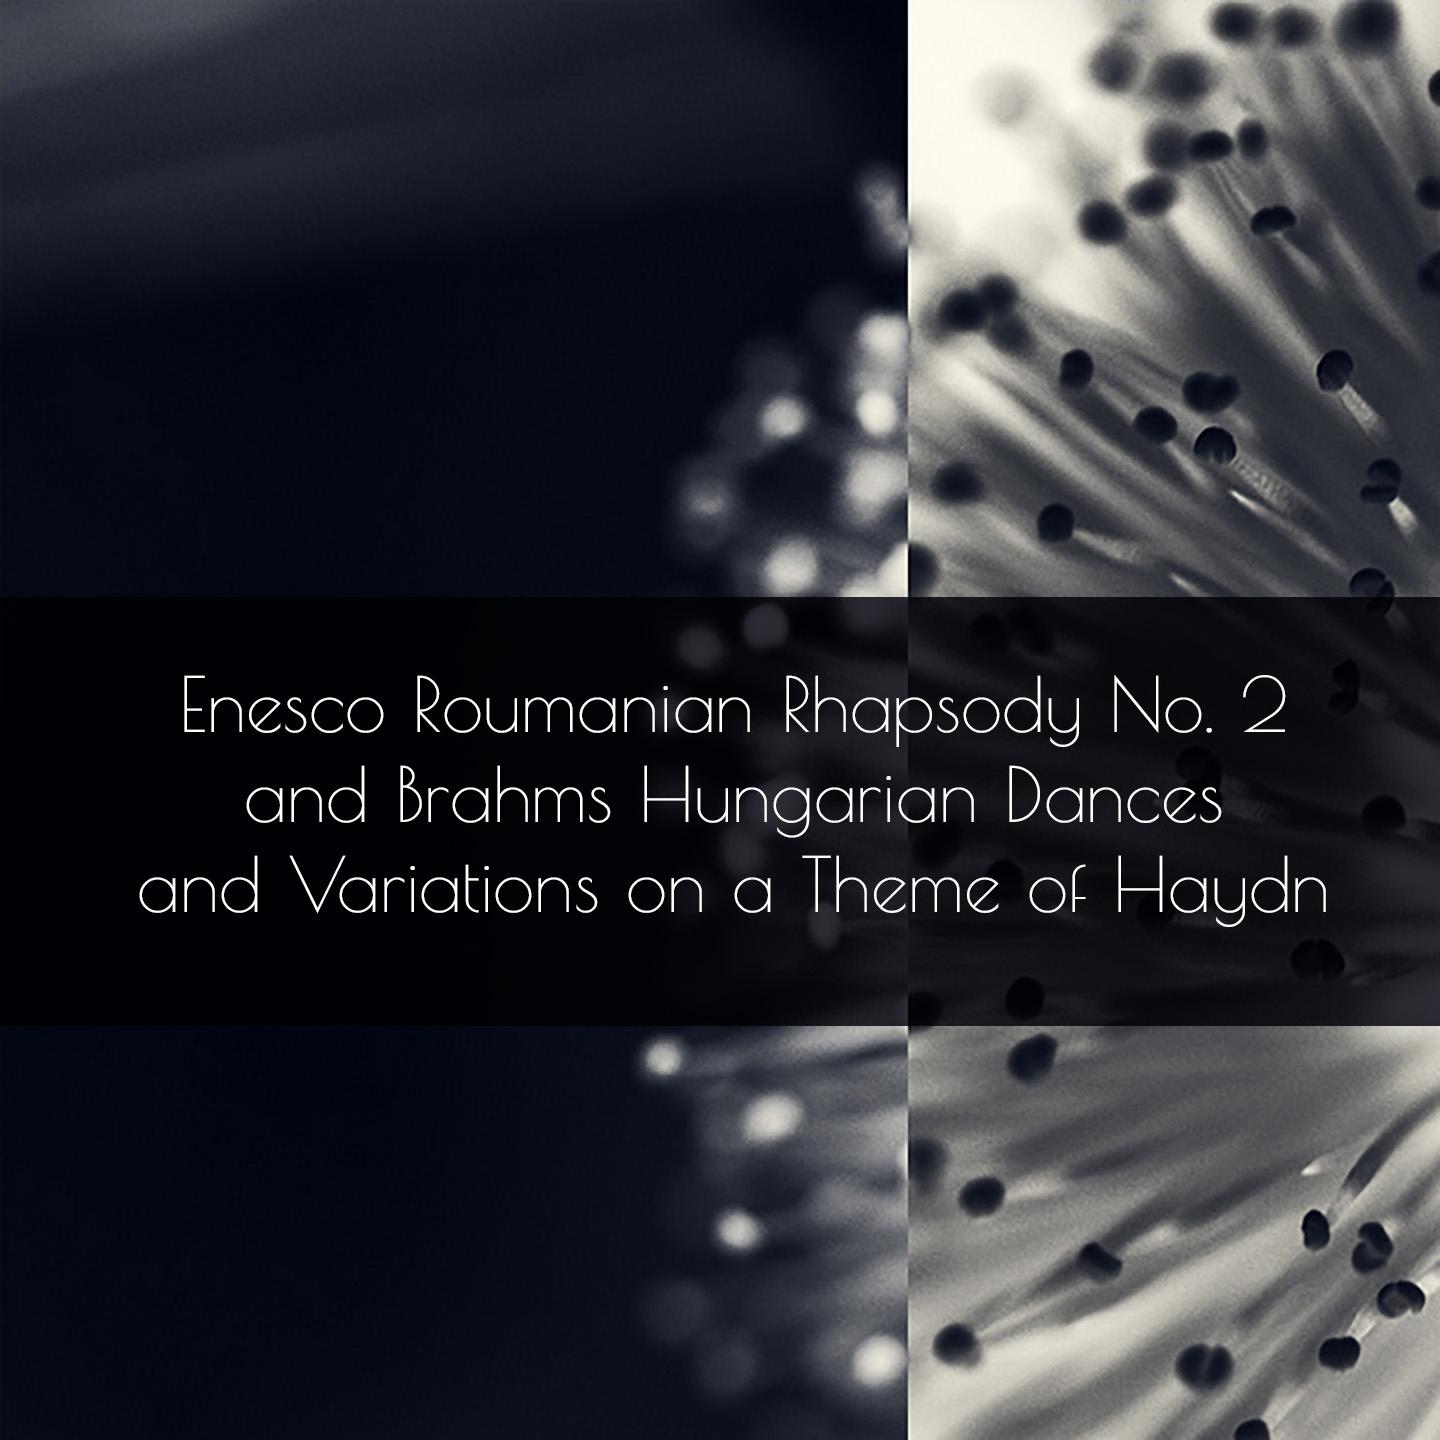 Roumanian Rhapsody No. 2, Op. 11: No. 1 in G Major